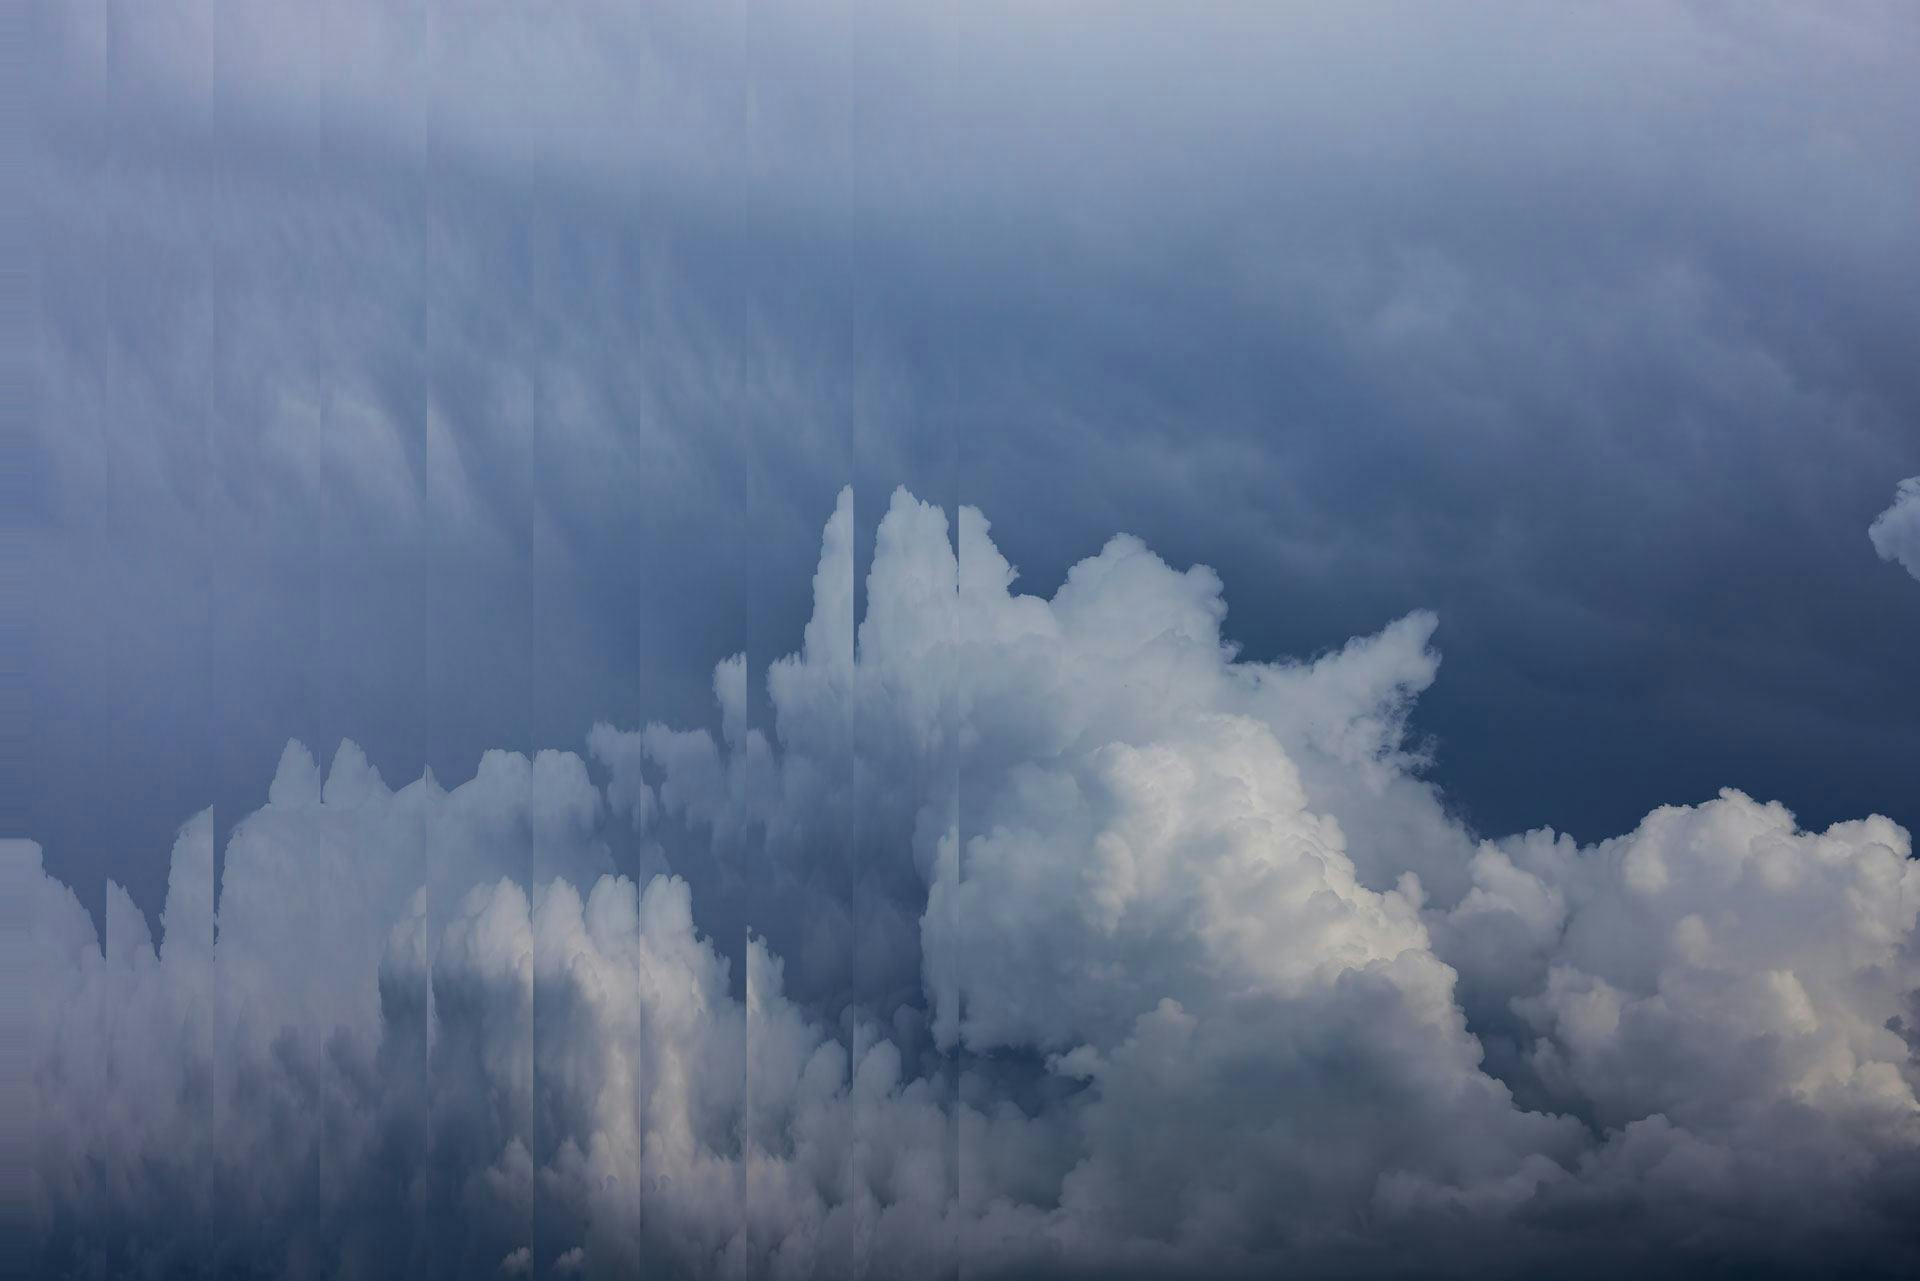 Prismatisk vy av vita moln mot en blå himmel som symboliserar IoL Data Sharing Plattformen som är helt  molnbaserad och bygger på samverkan.